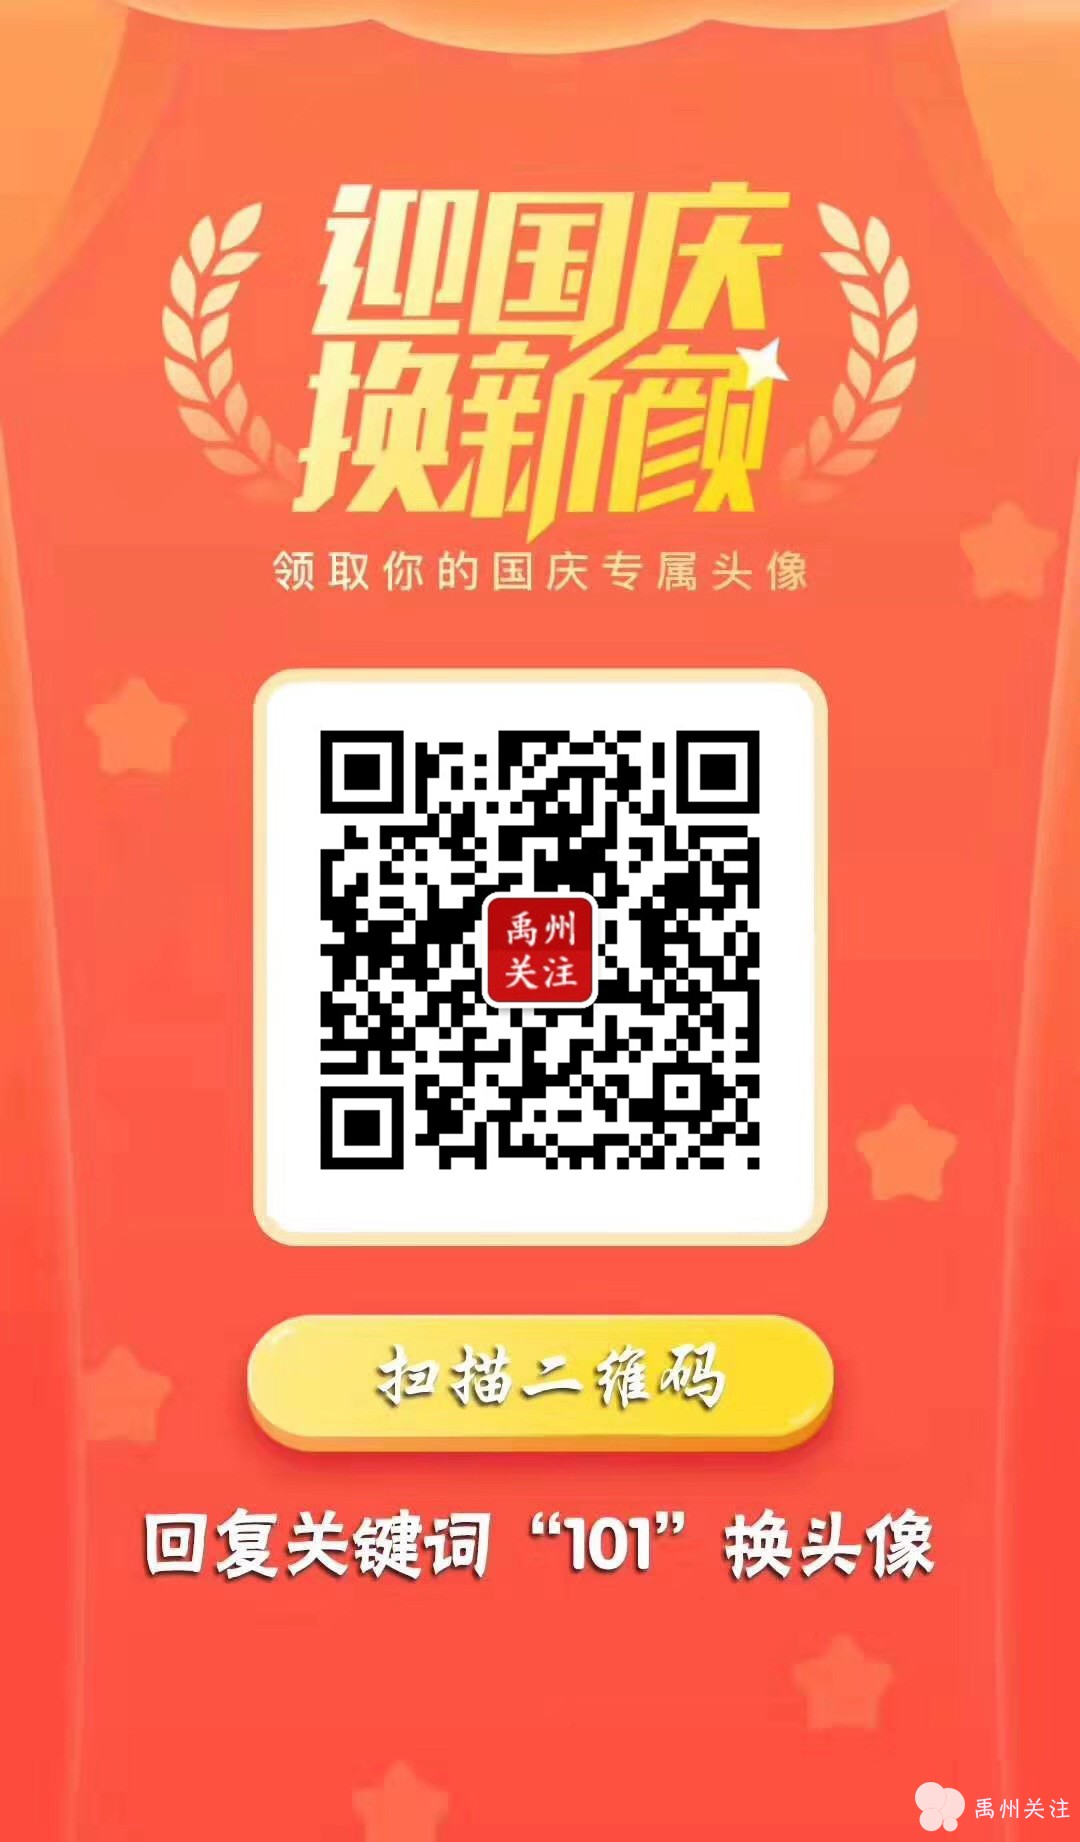 WeChat Image_20190924135450.jpg